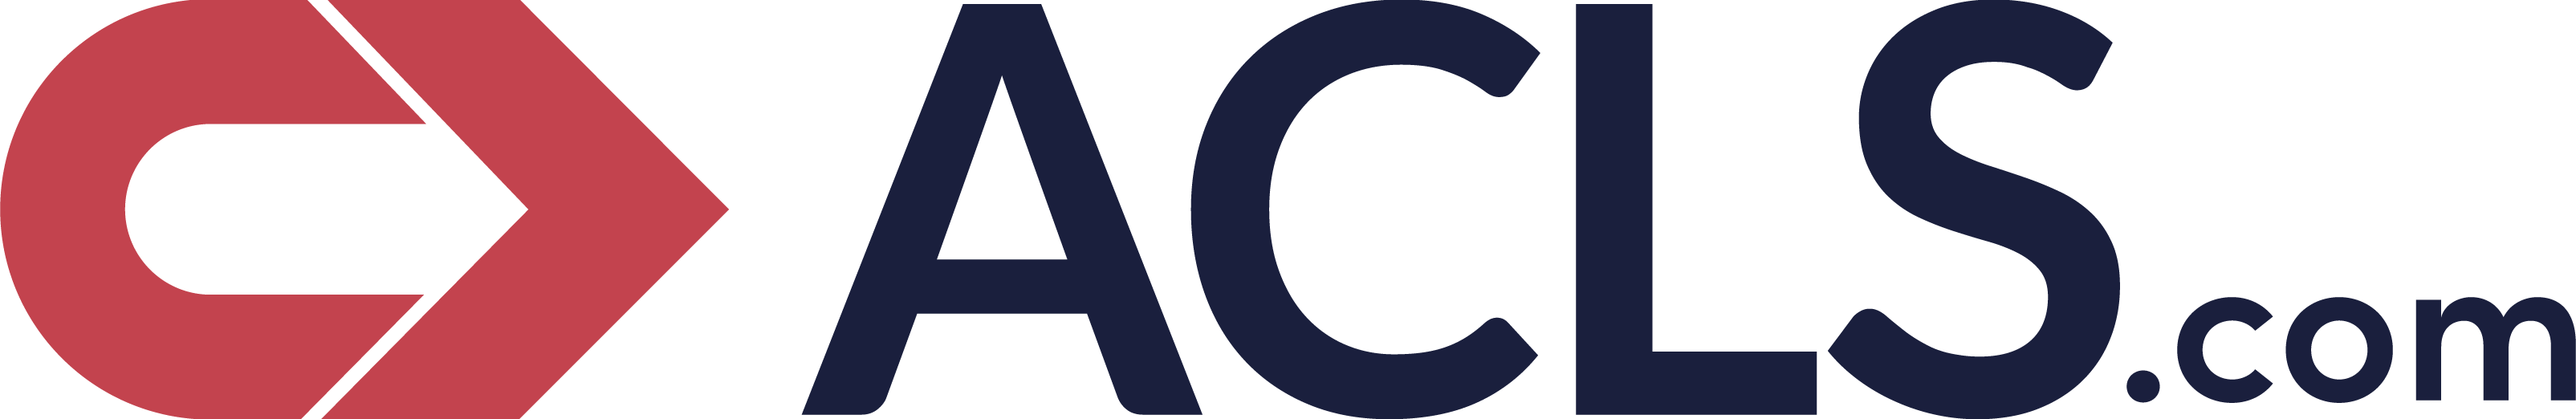 ACLS.com Logo